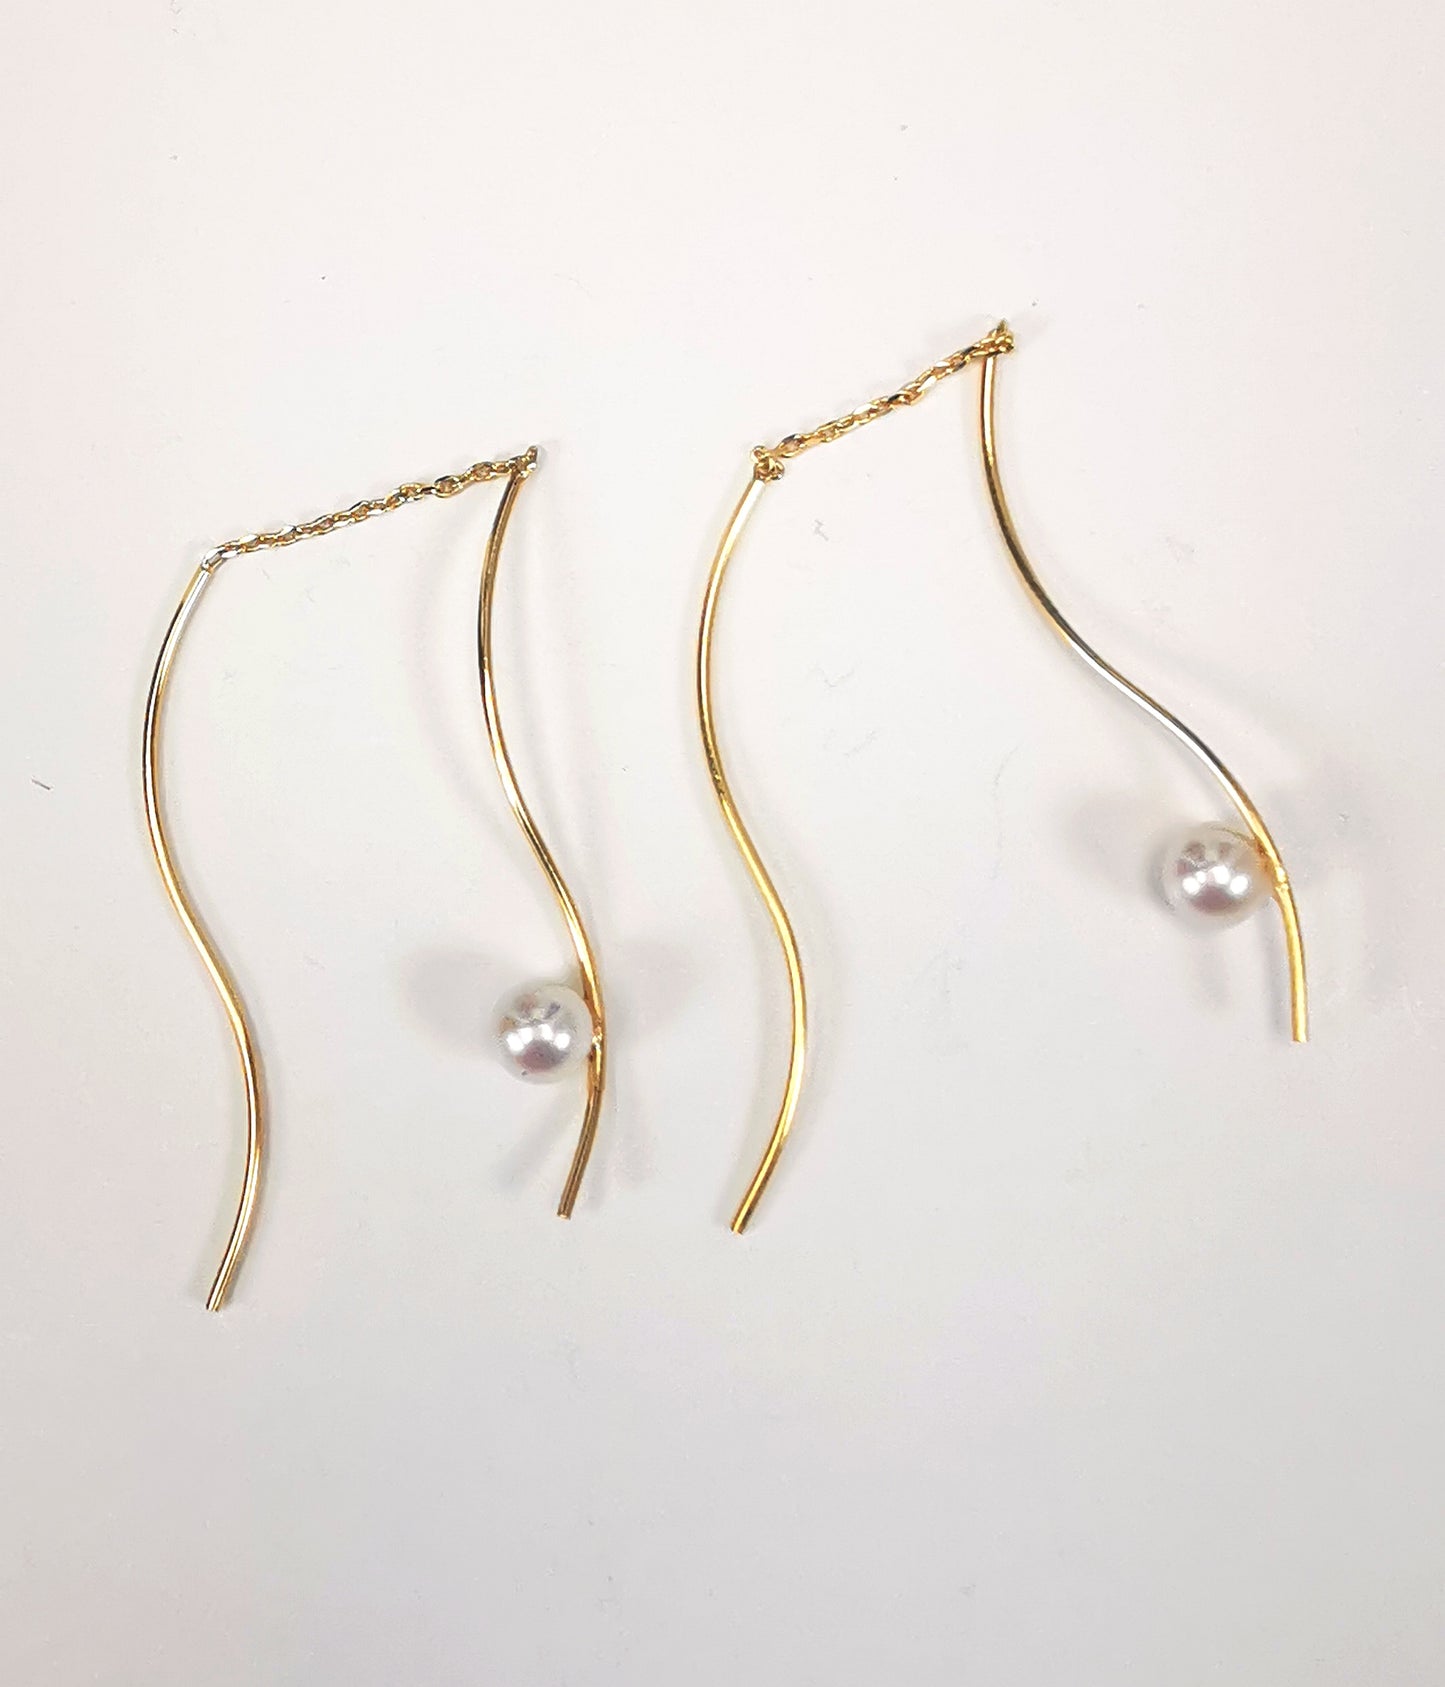 Boucles d'oreilles perles de culture blanches rondes 5mm sur pendants plaqués or. Les pendants sont constitués de deux "s" longs de 45mm reliés par 15mm de chaine. Sur un des 2 "s", la perle est montée perpendiculairement, à 8mm du bas. Présentées cote à cote, perle en bas,  tournées vers la gauche, posées sur fond blanc. Vue de dessus.